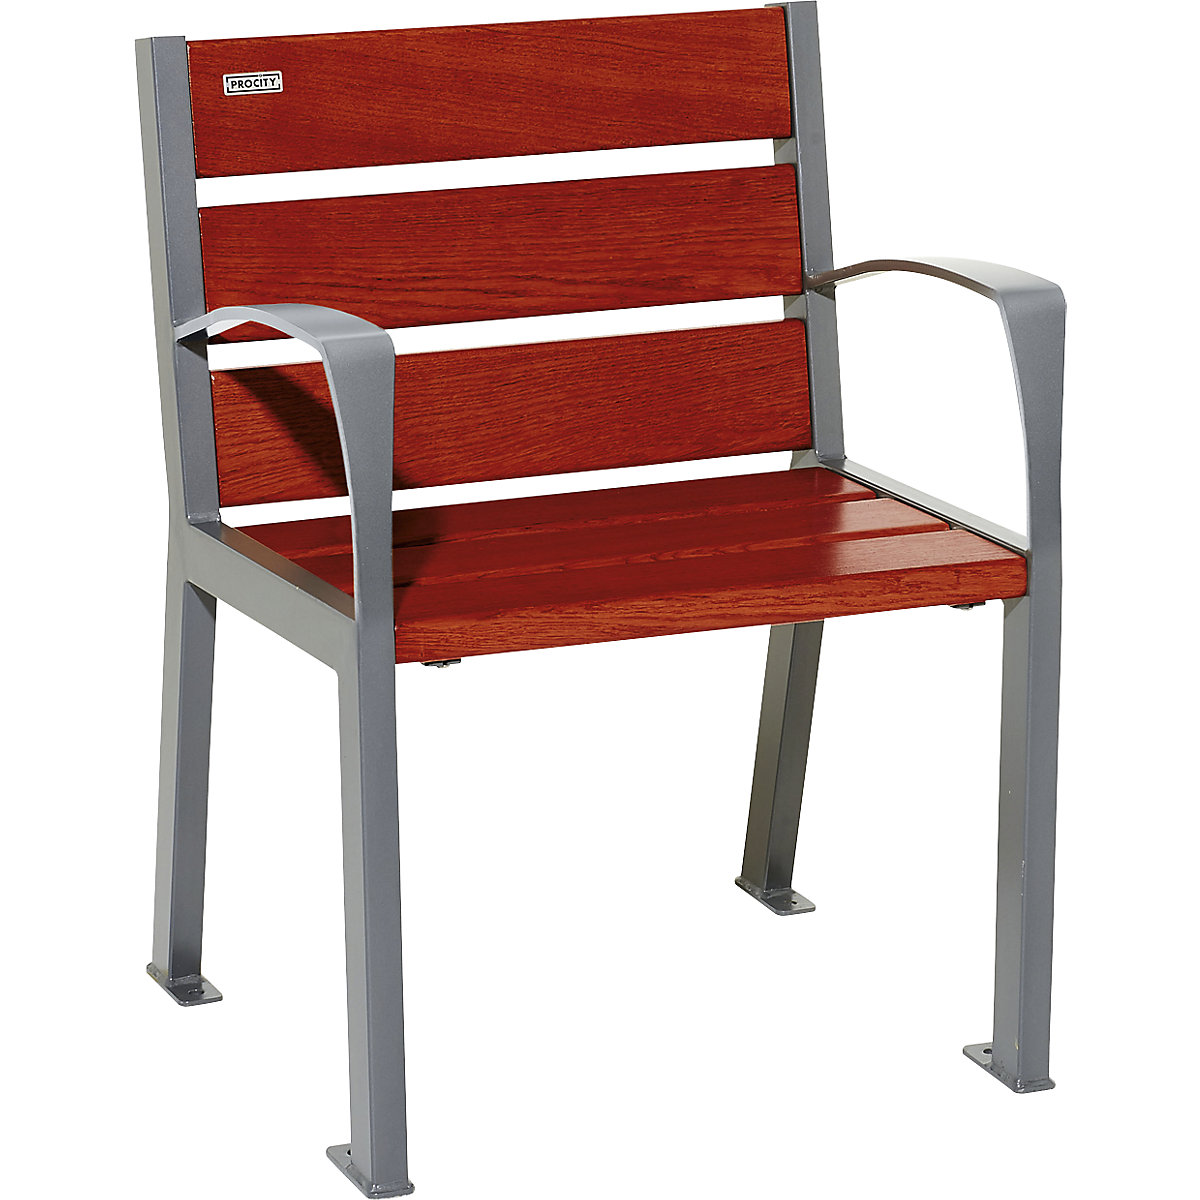 SILAOS® wooden chair - PROCITY